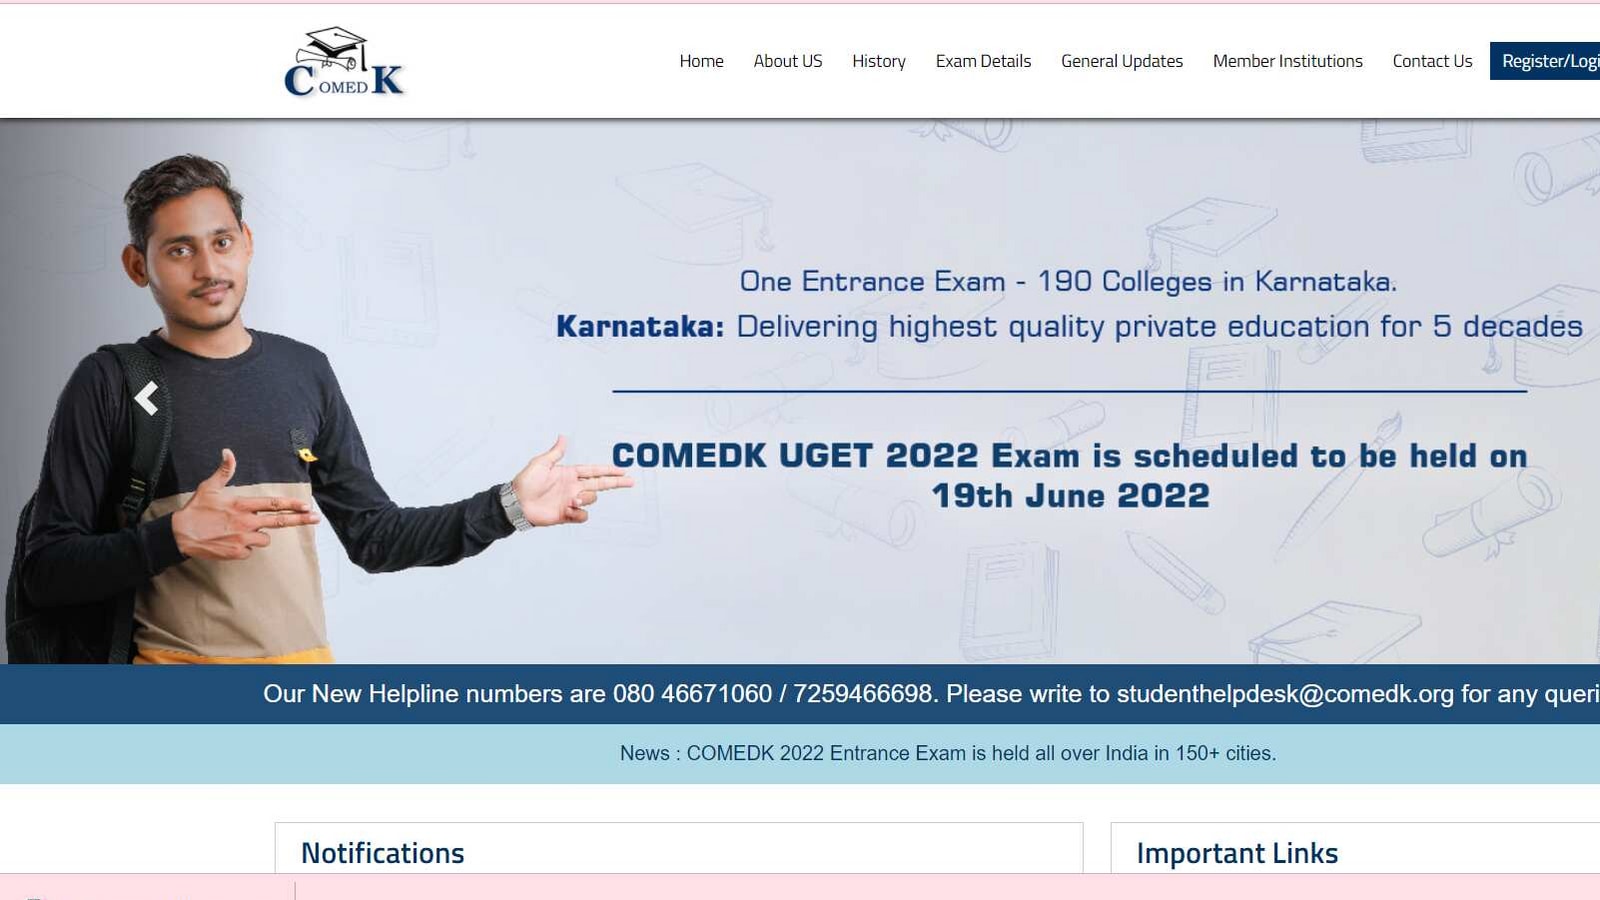 COMEDK UGET 2022: Registration Process begins at www.comedk.org, details here